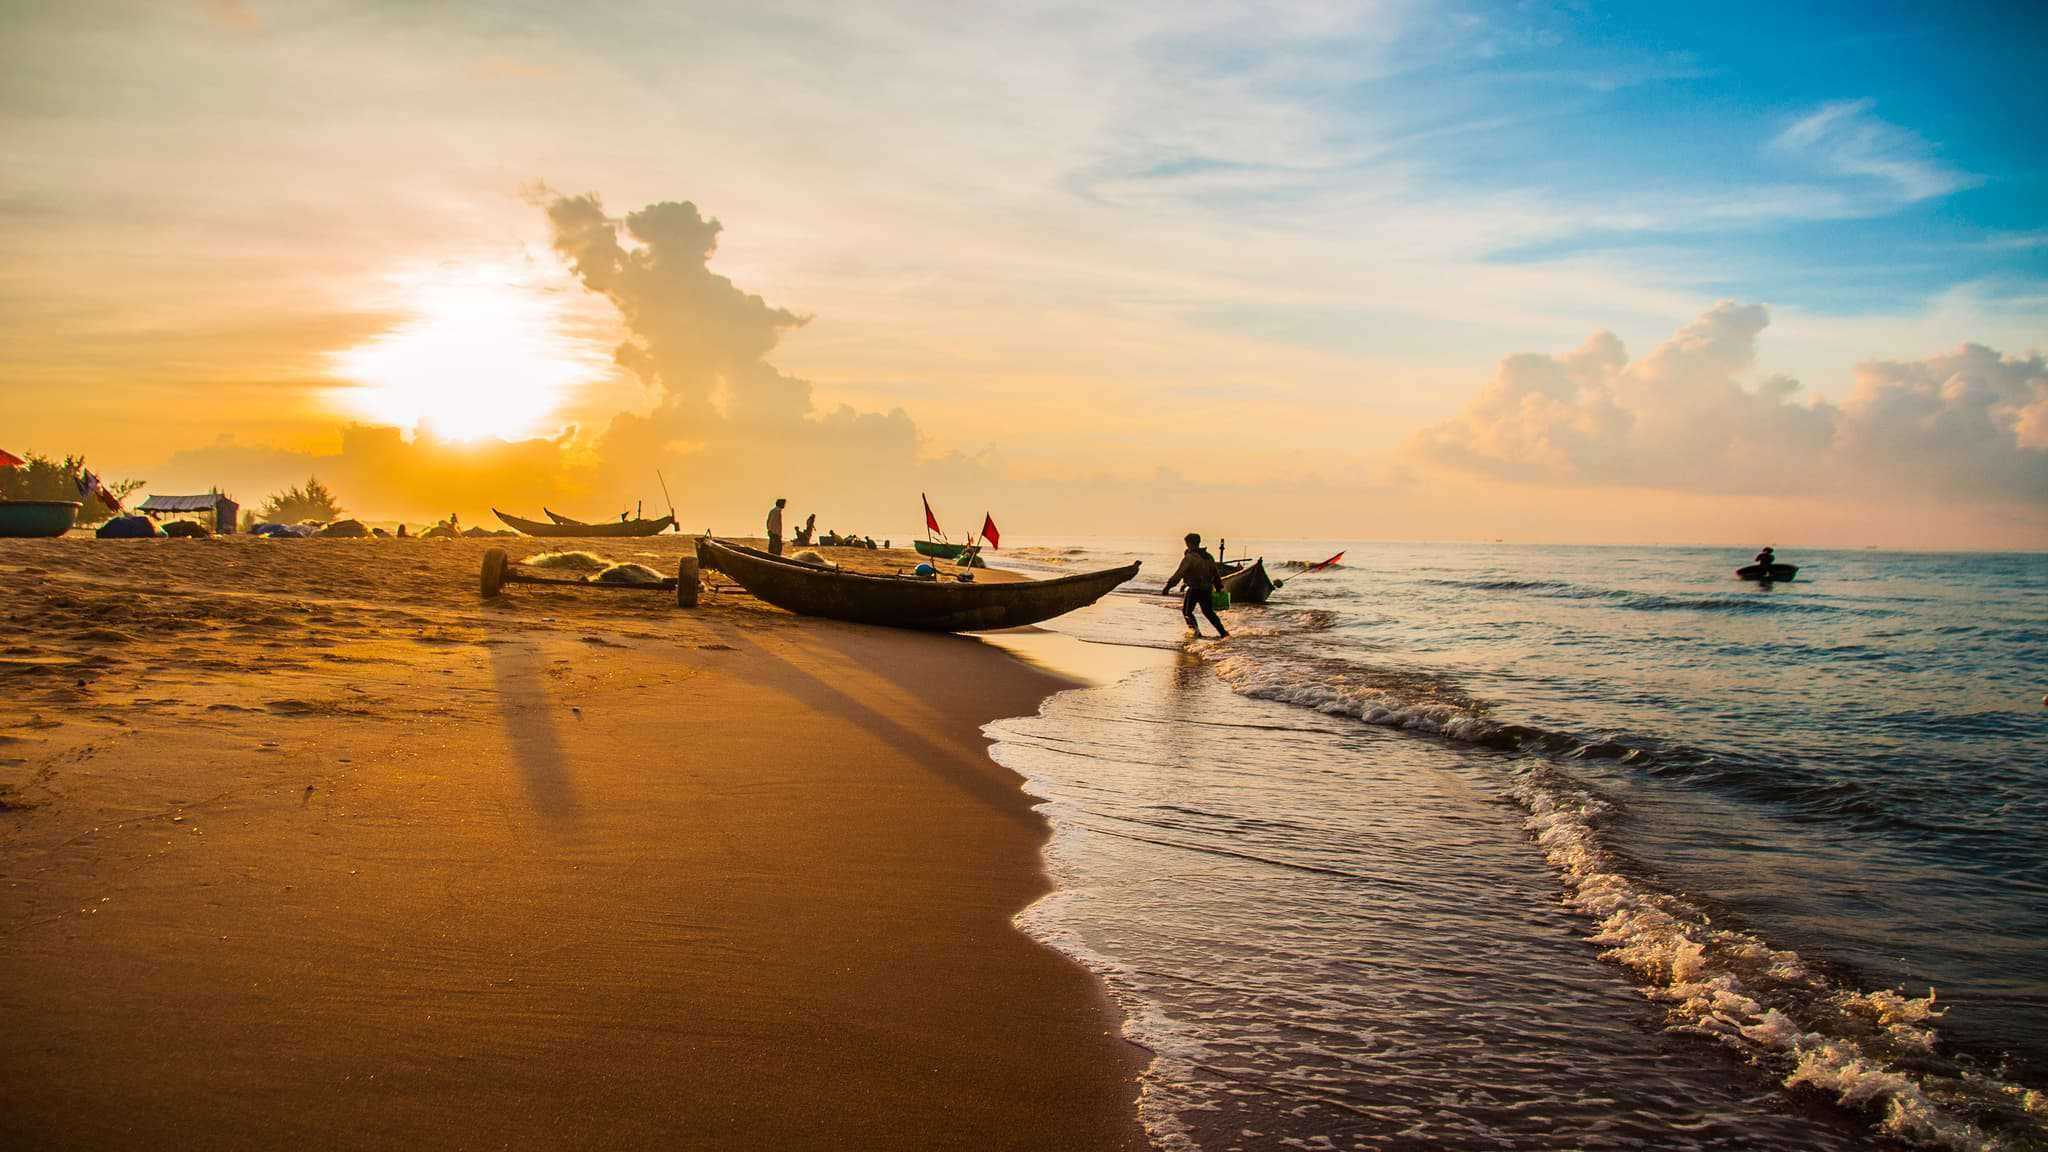 Danh sách 10 bãi biển đẹp nhất Việt Nam không thể bỏ qua